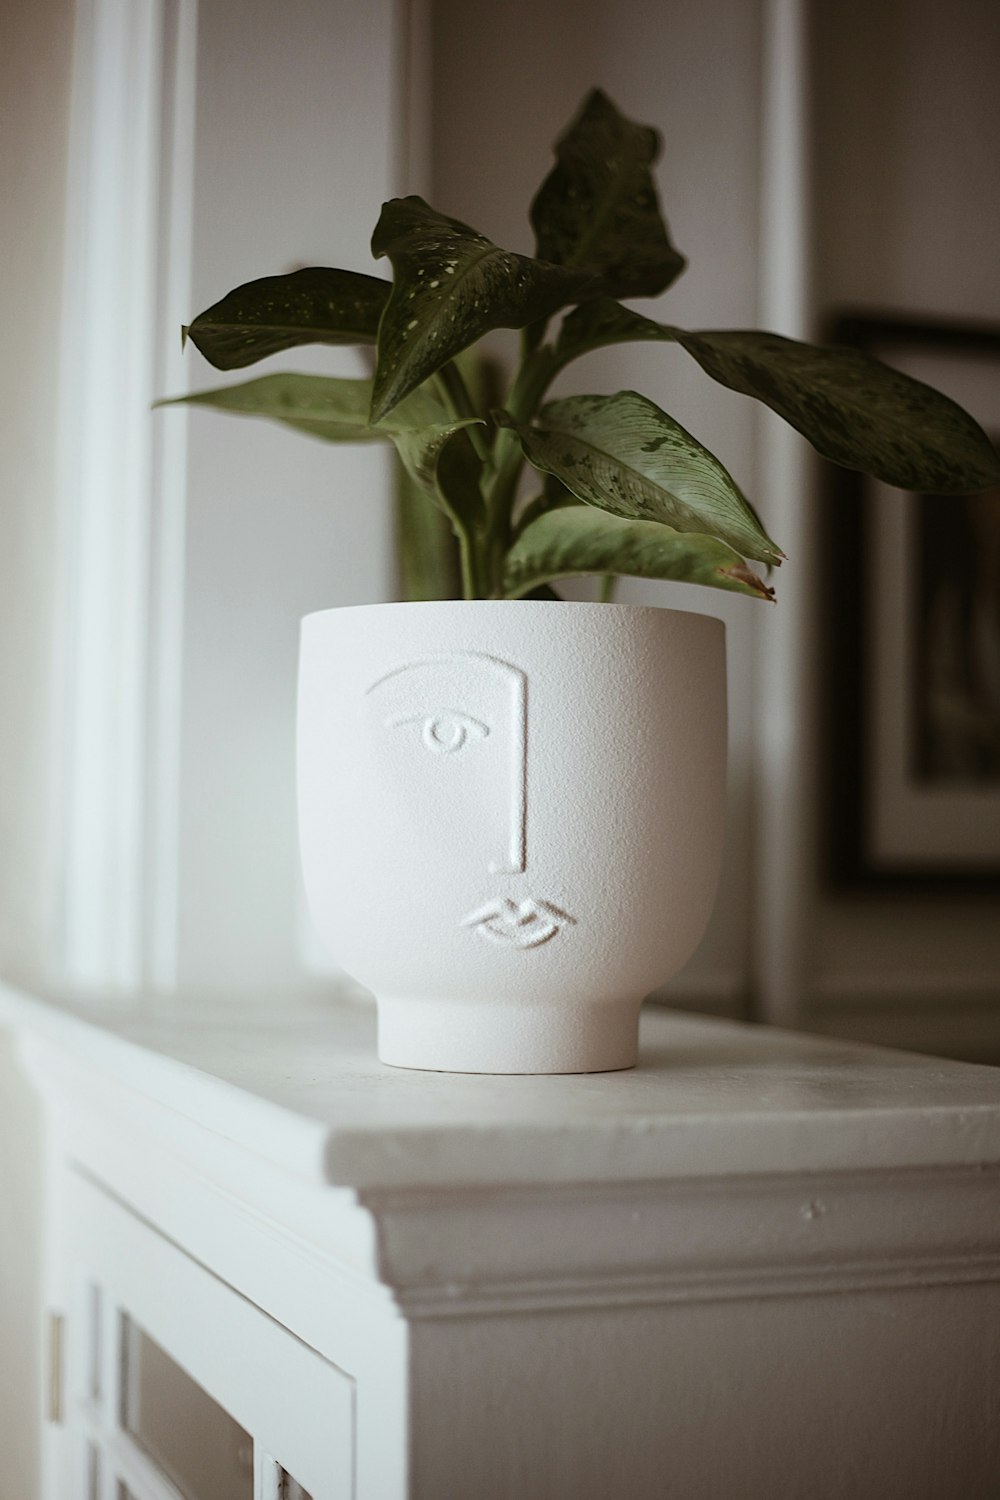 une plante en pot posée sur une table blanche